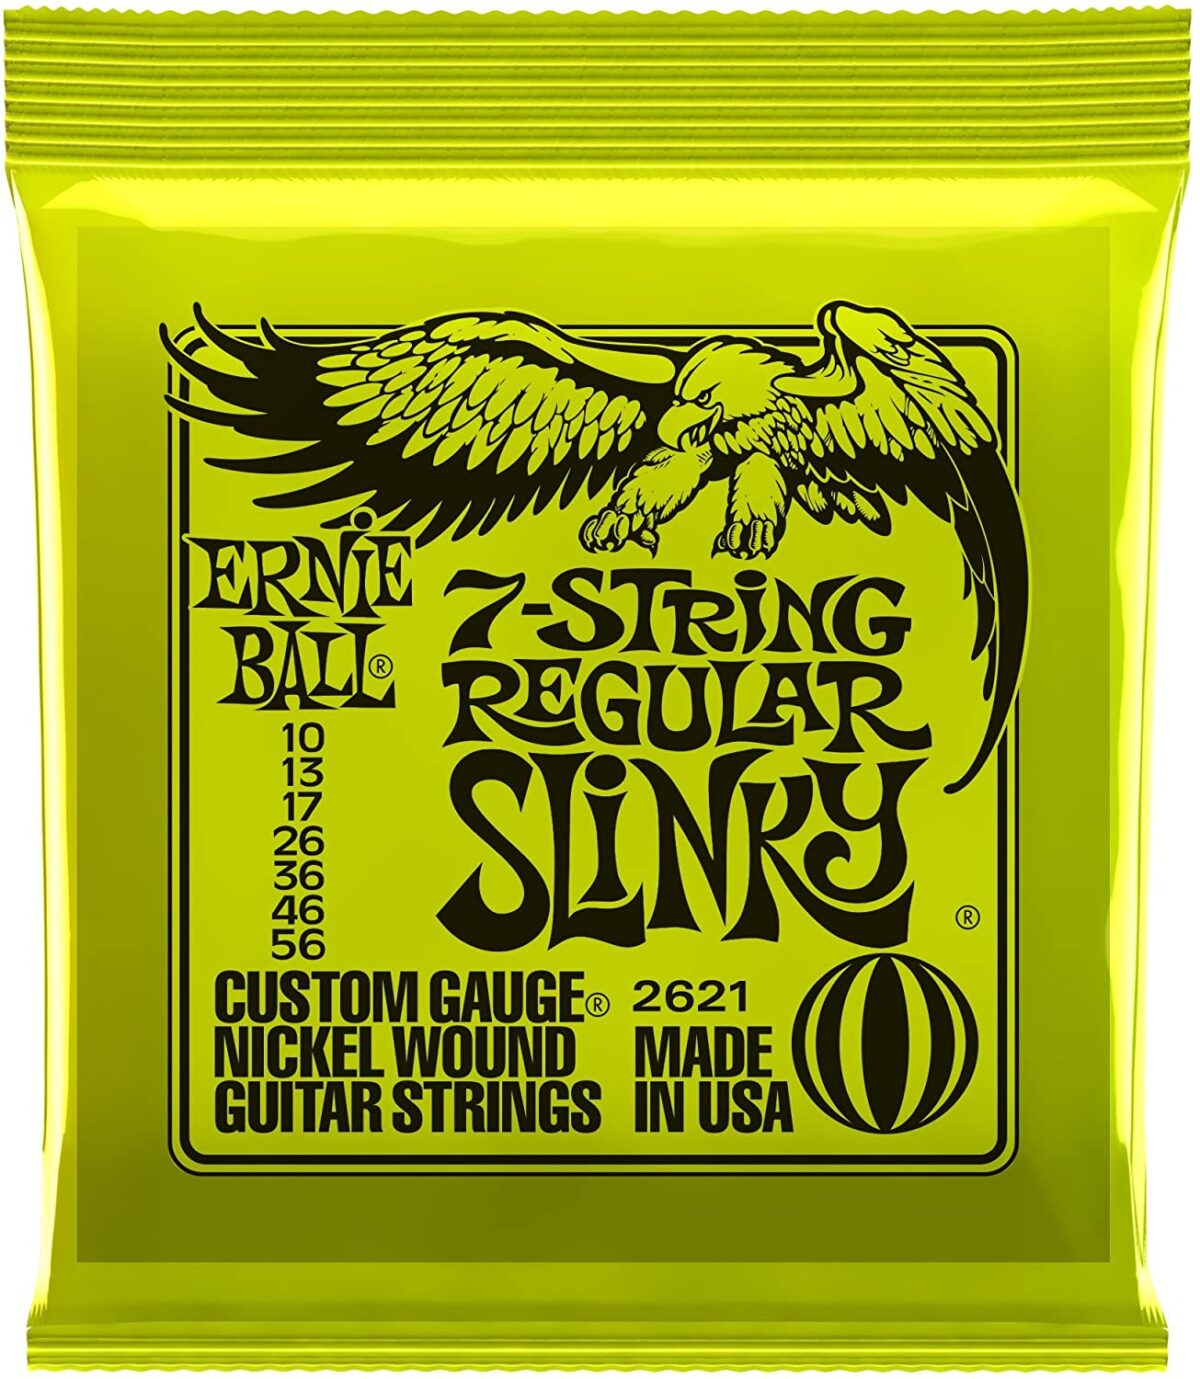 Regular Slinky 7- String Nickel Wound Electric Guitar Strings